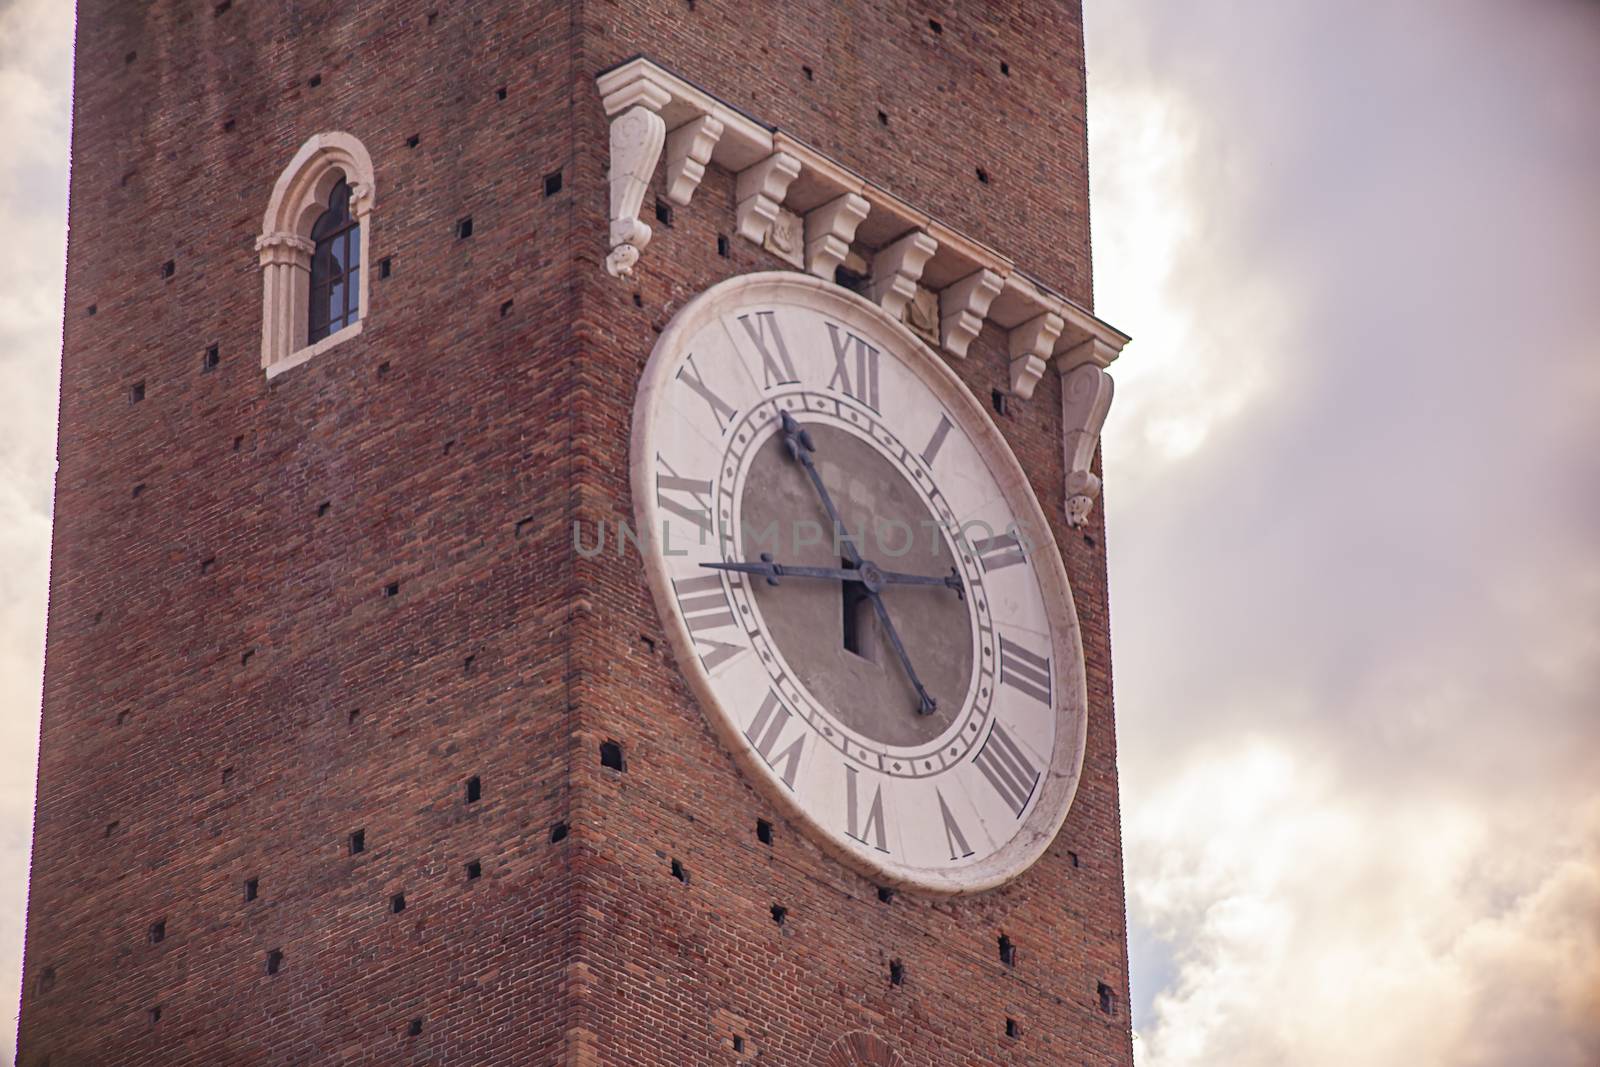 Lamberti tower clock detail in the city of Verona in Italy